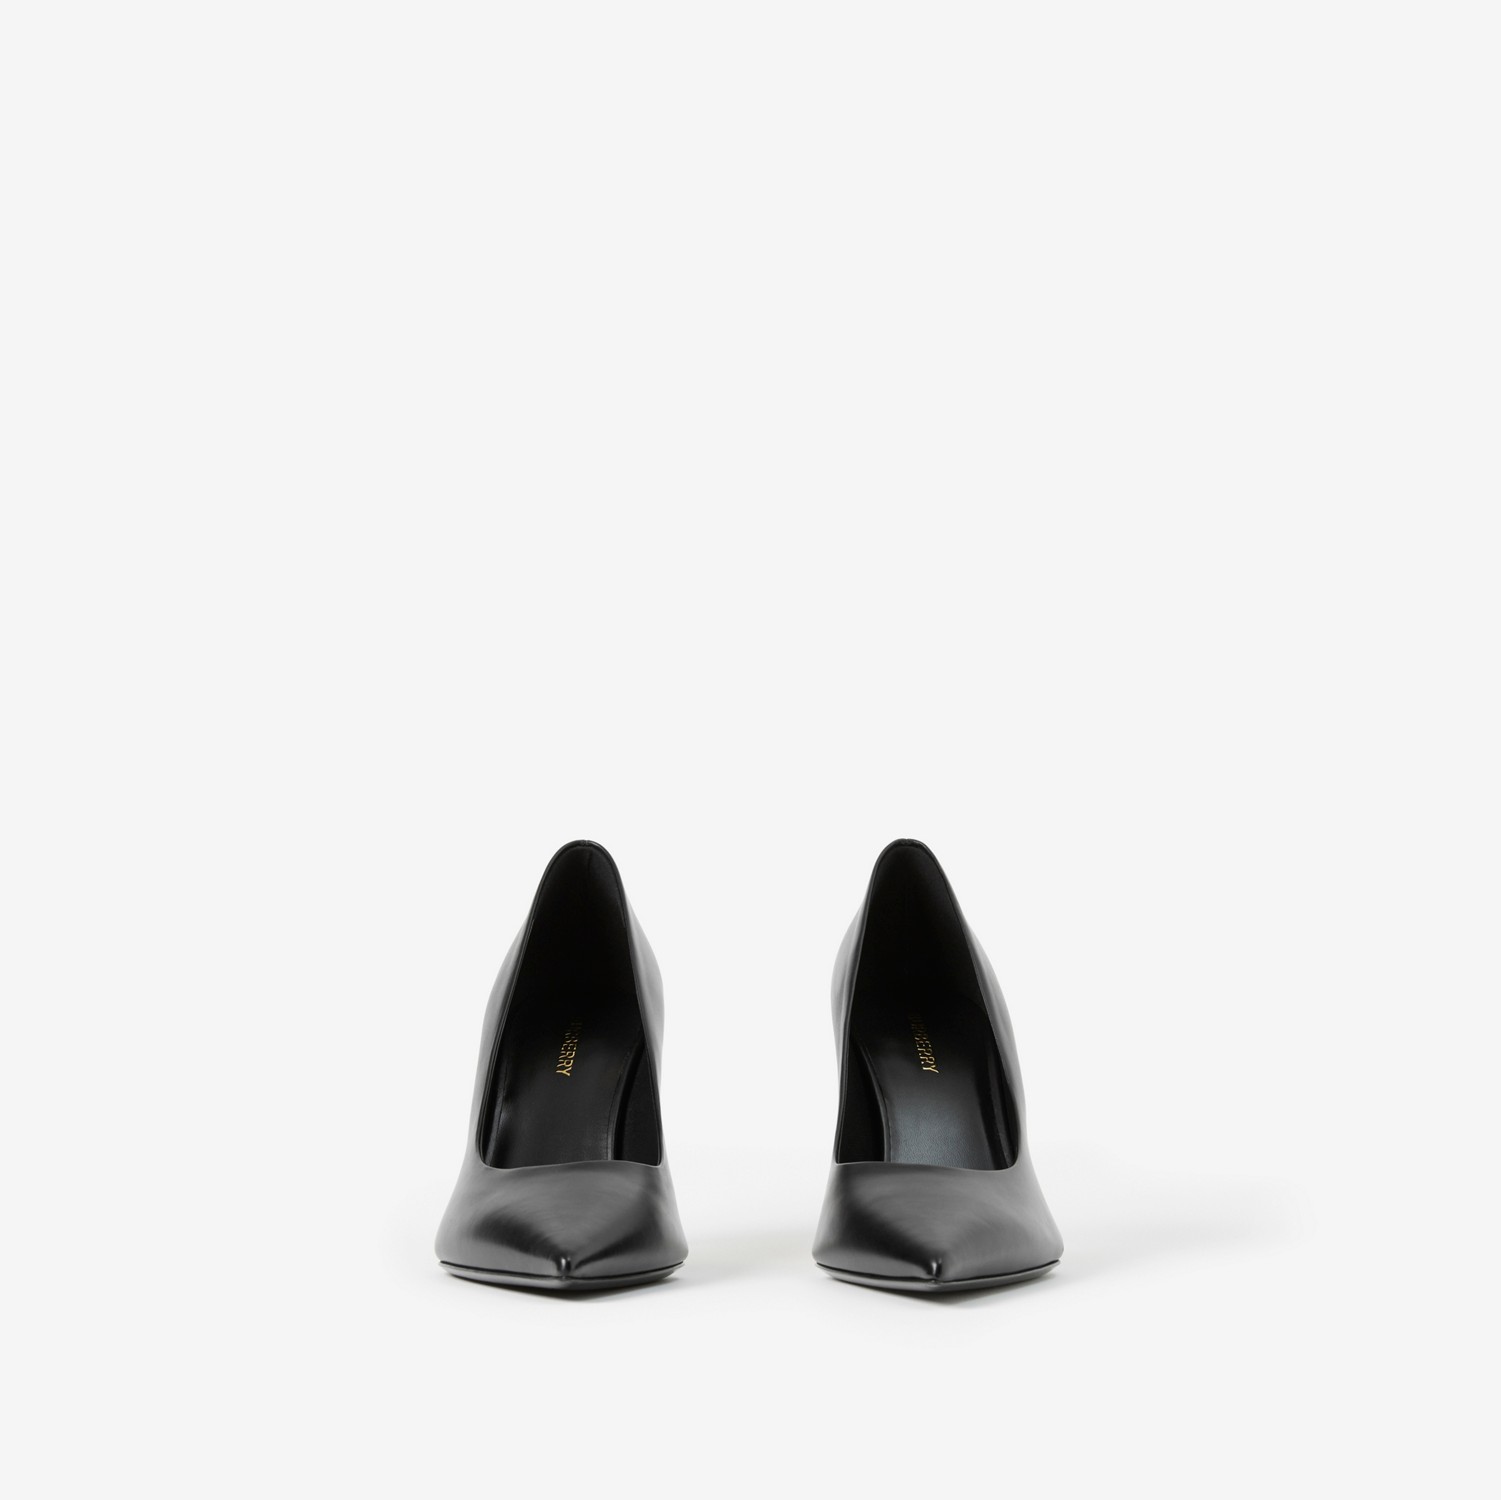 Scarpins de bico fino em couro (Preto) - Mulheres | Burberry® oficial